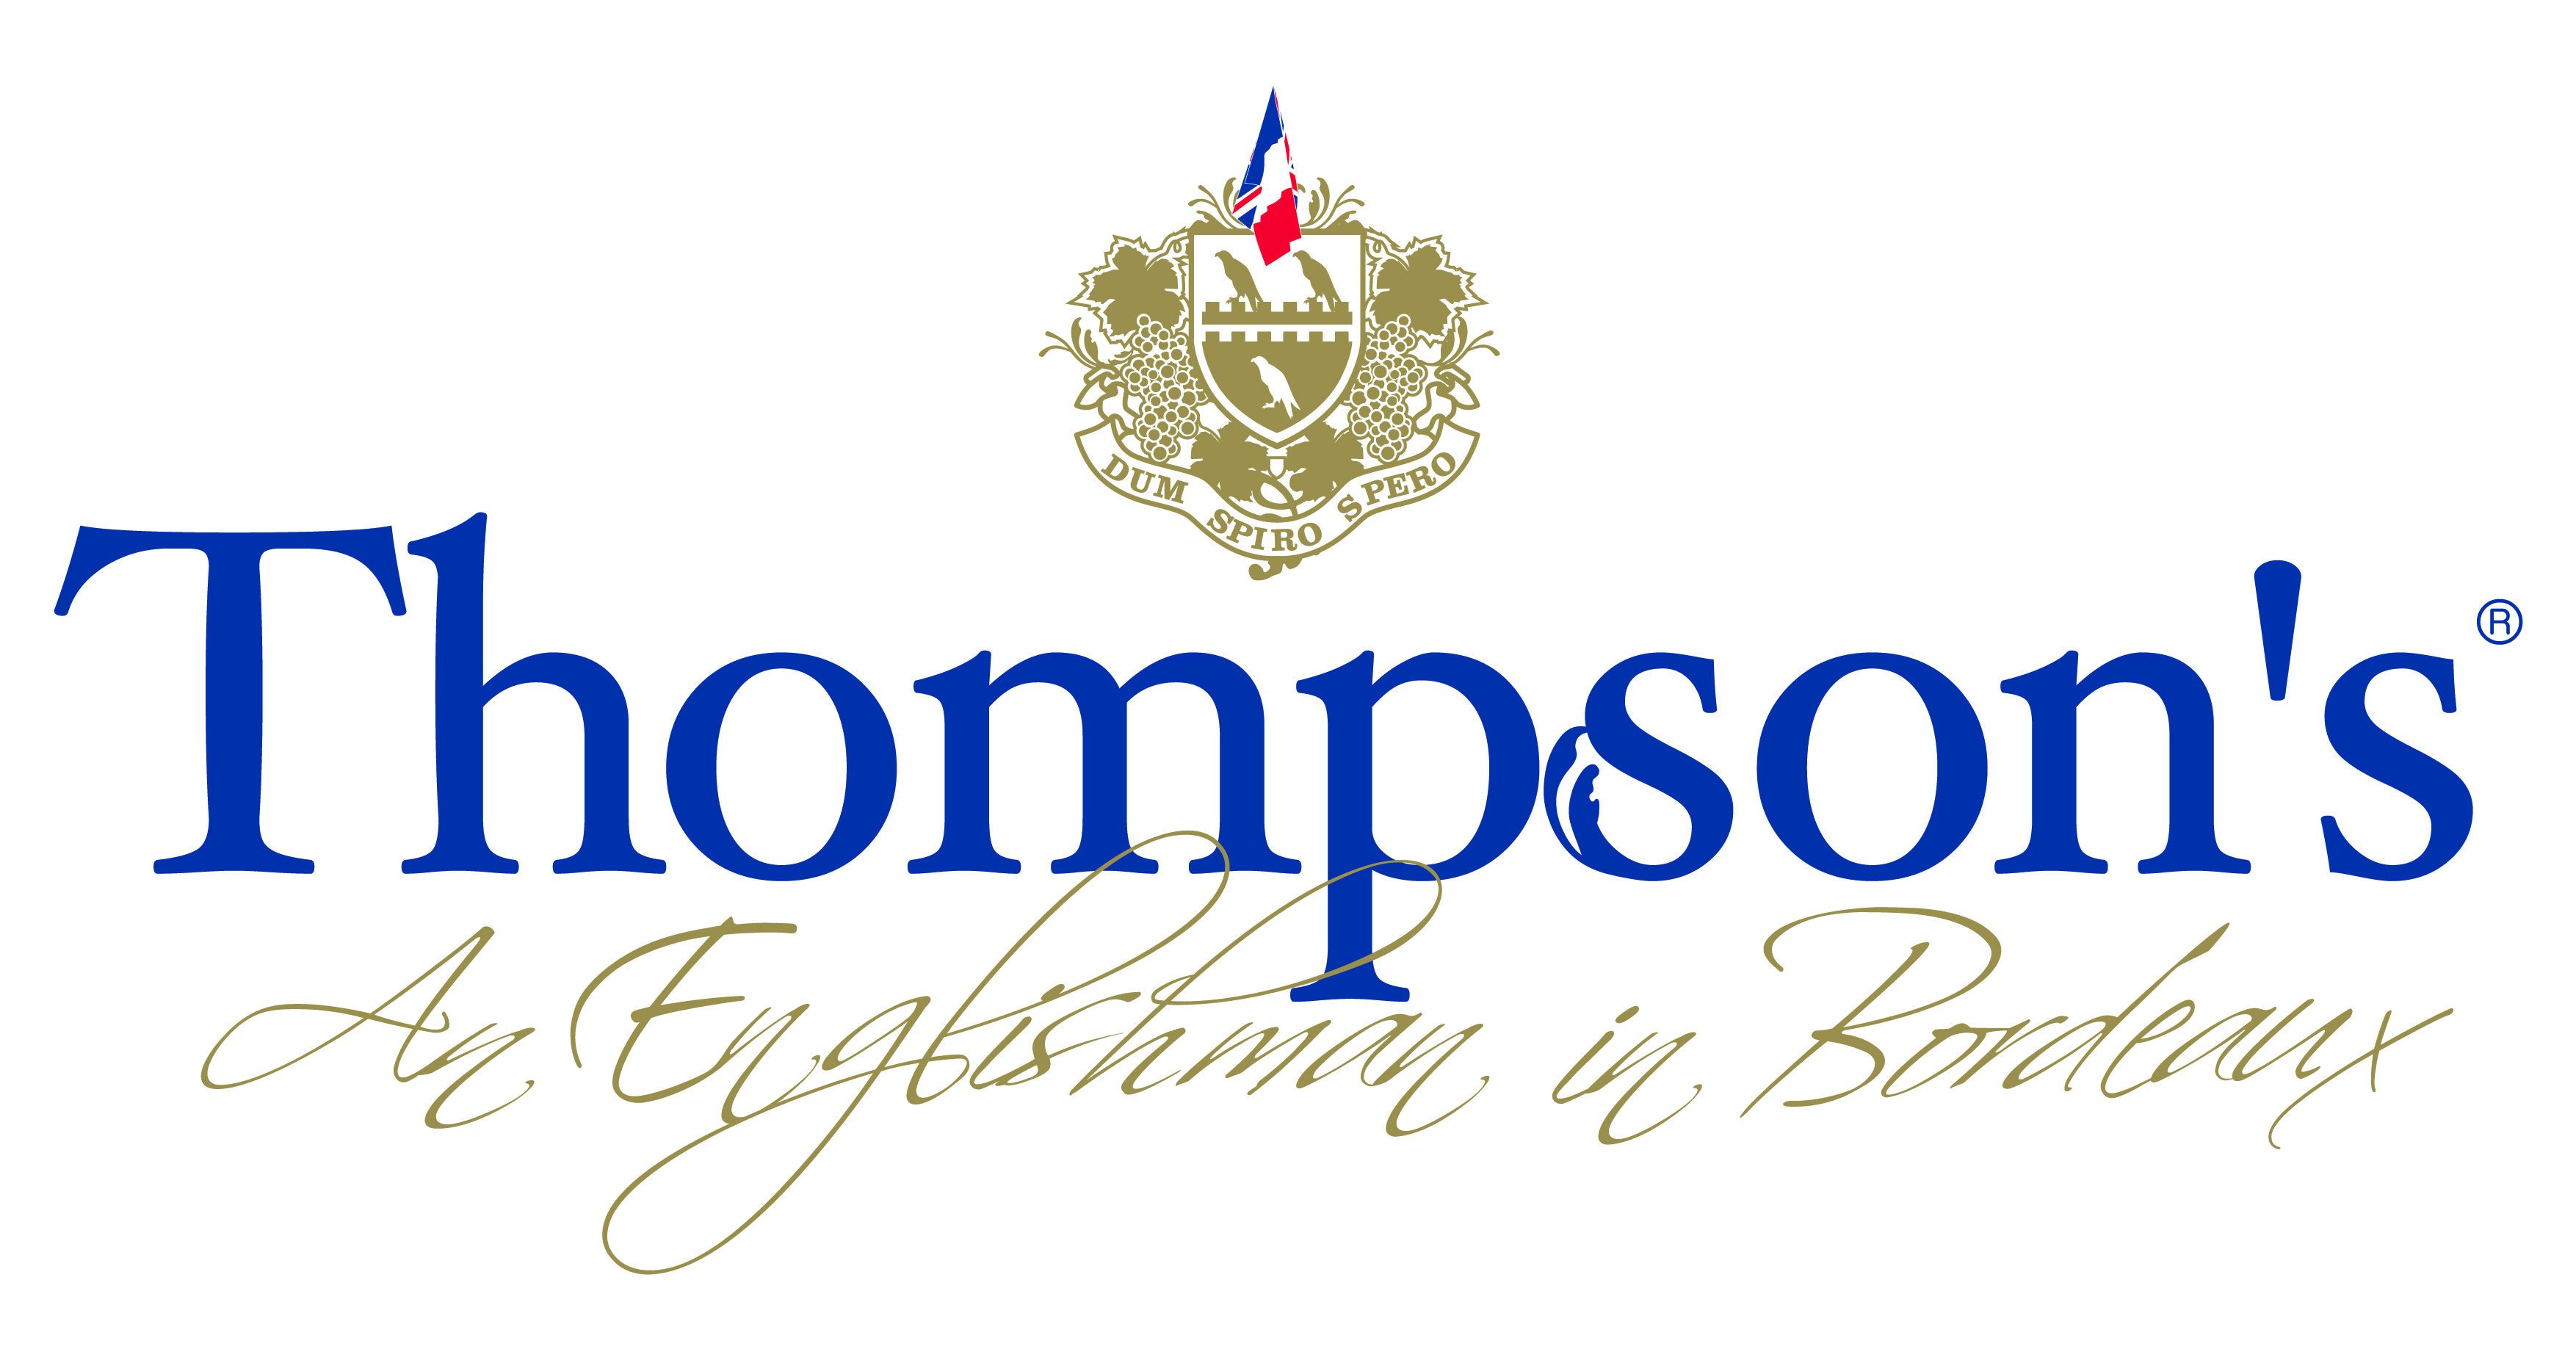 Thompson's Finest Eaux de Vie Bordeaux